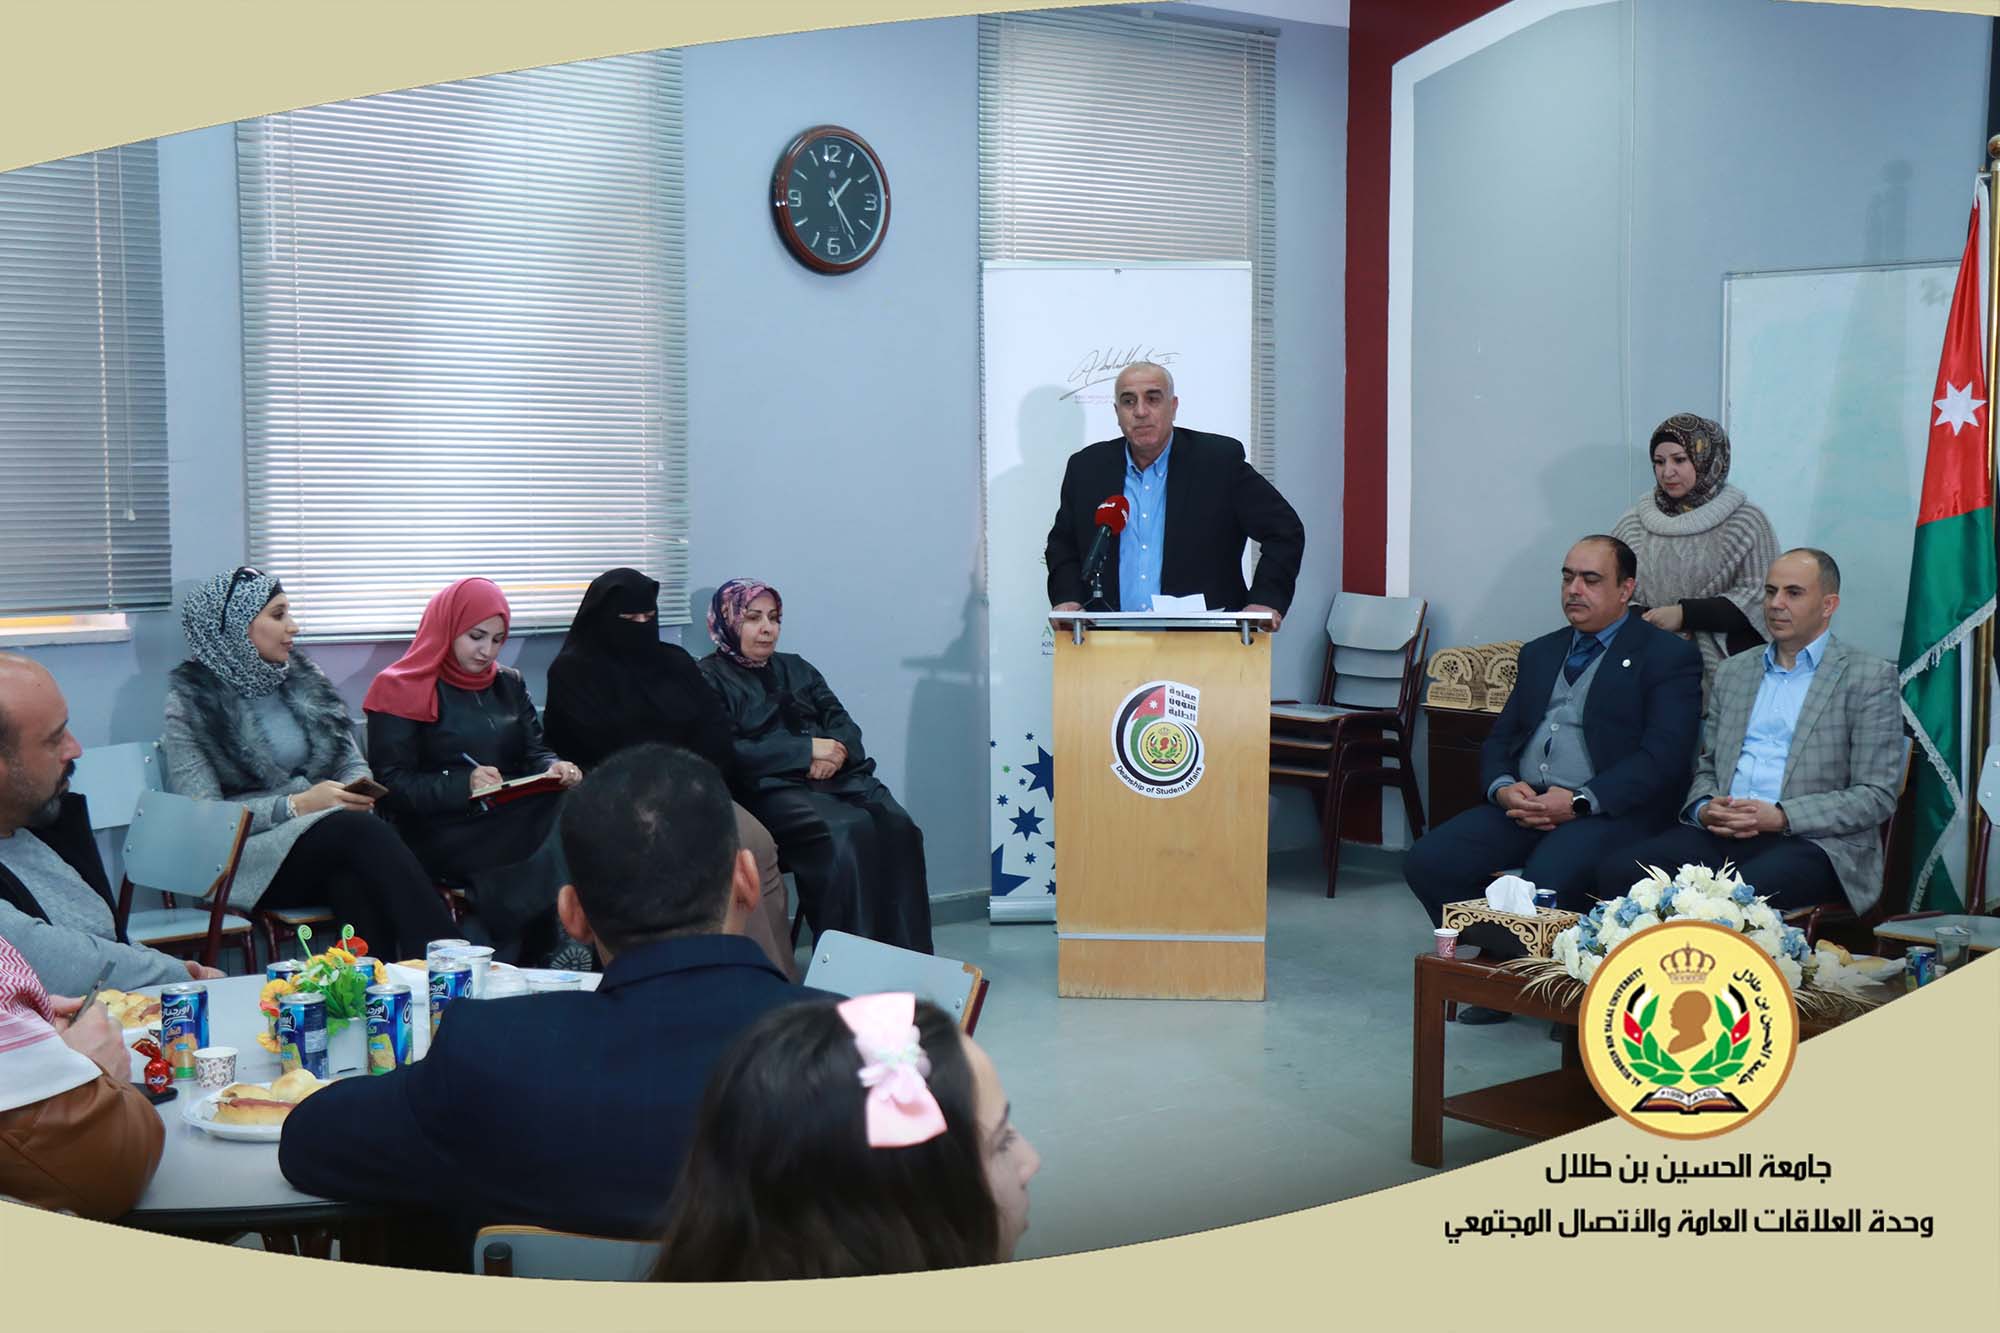 ملتقى لمدراء المدارس الحكومية لمنطقة معان من خريجي جامعة الحسين بن طلال في الجامعة.